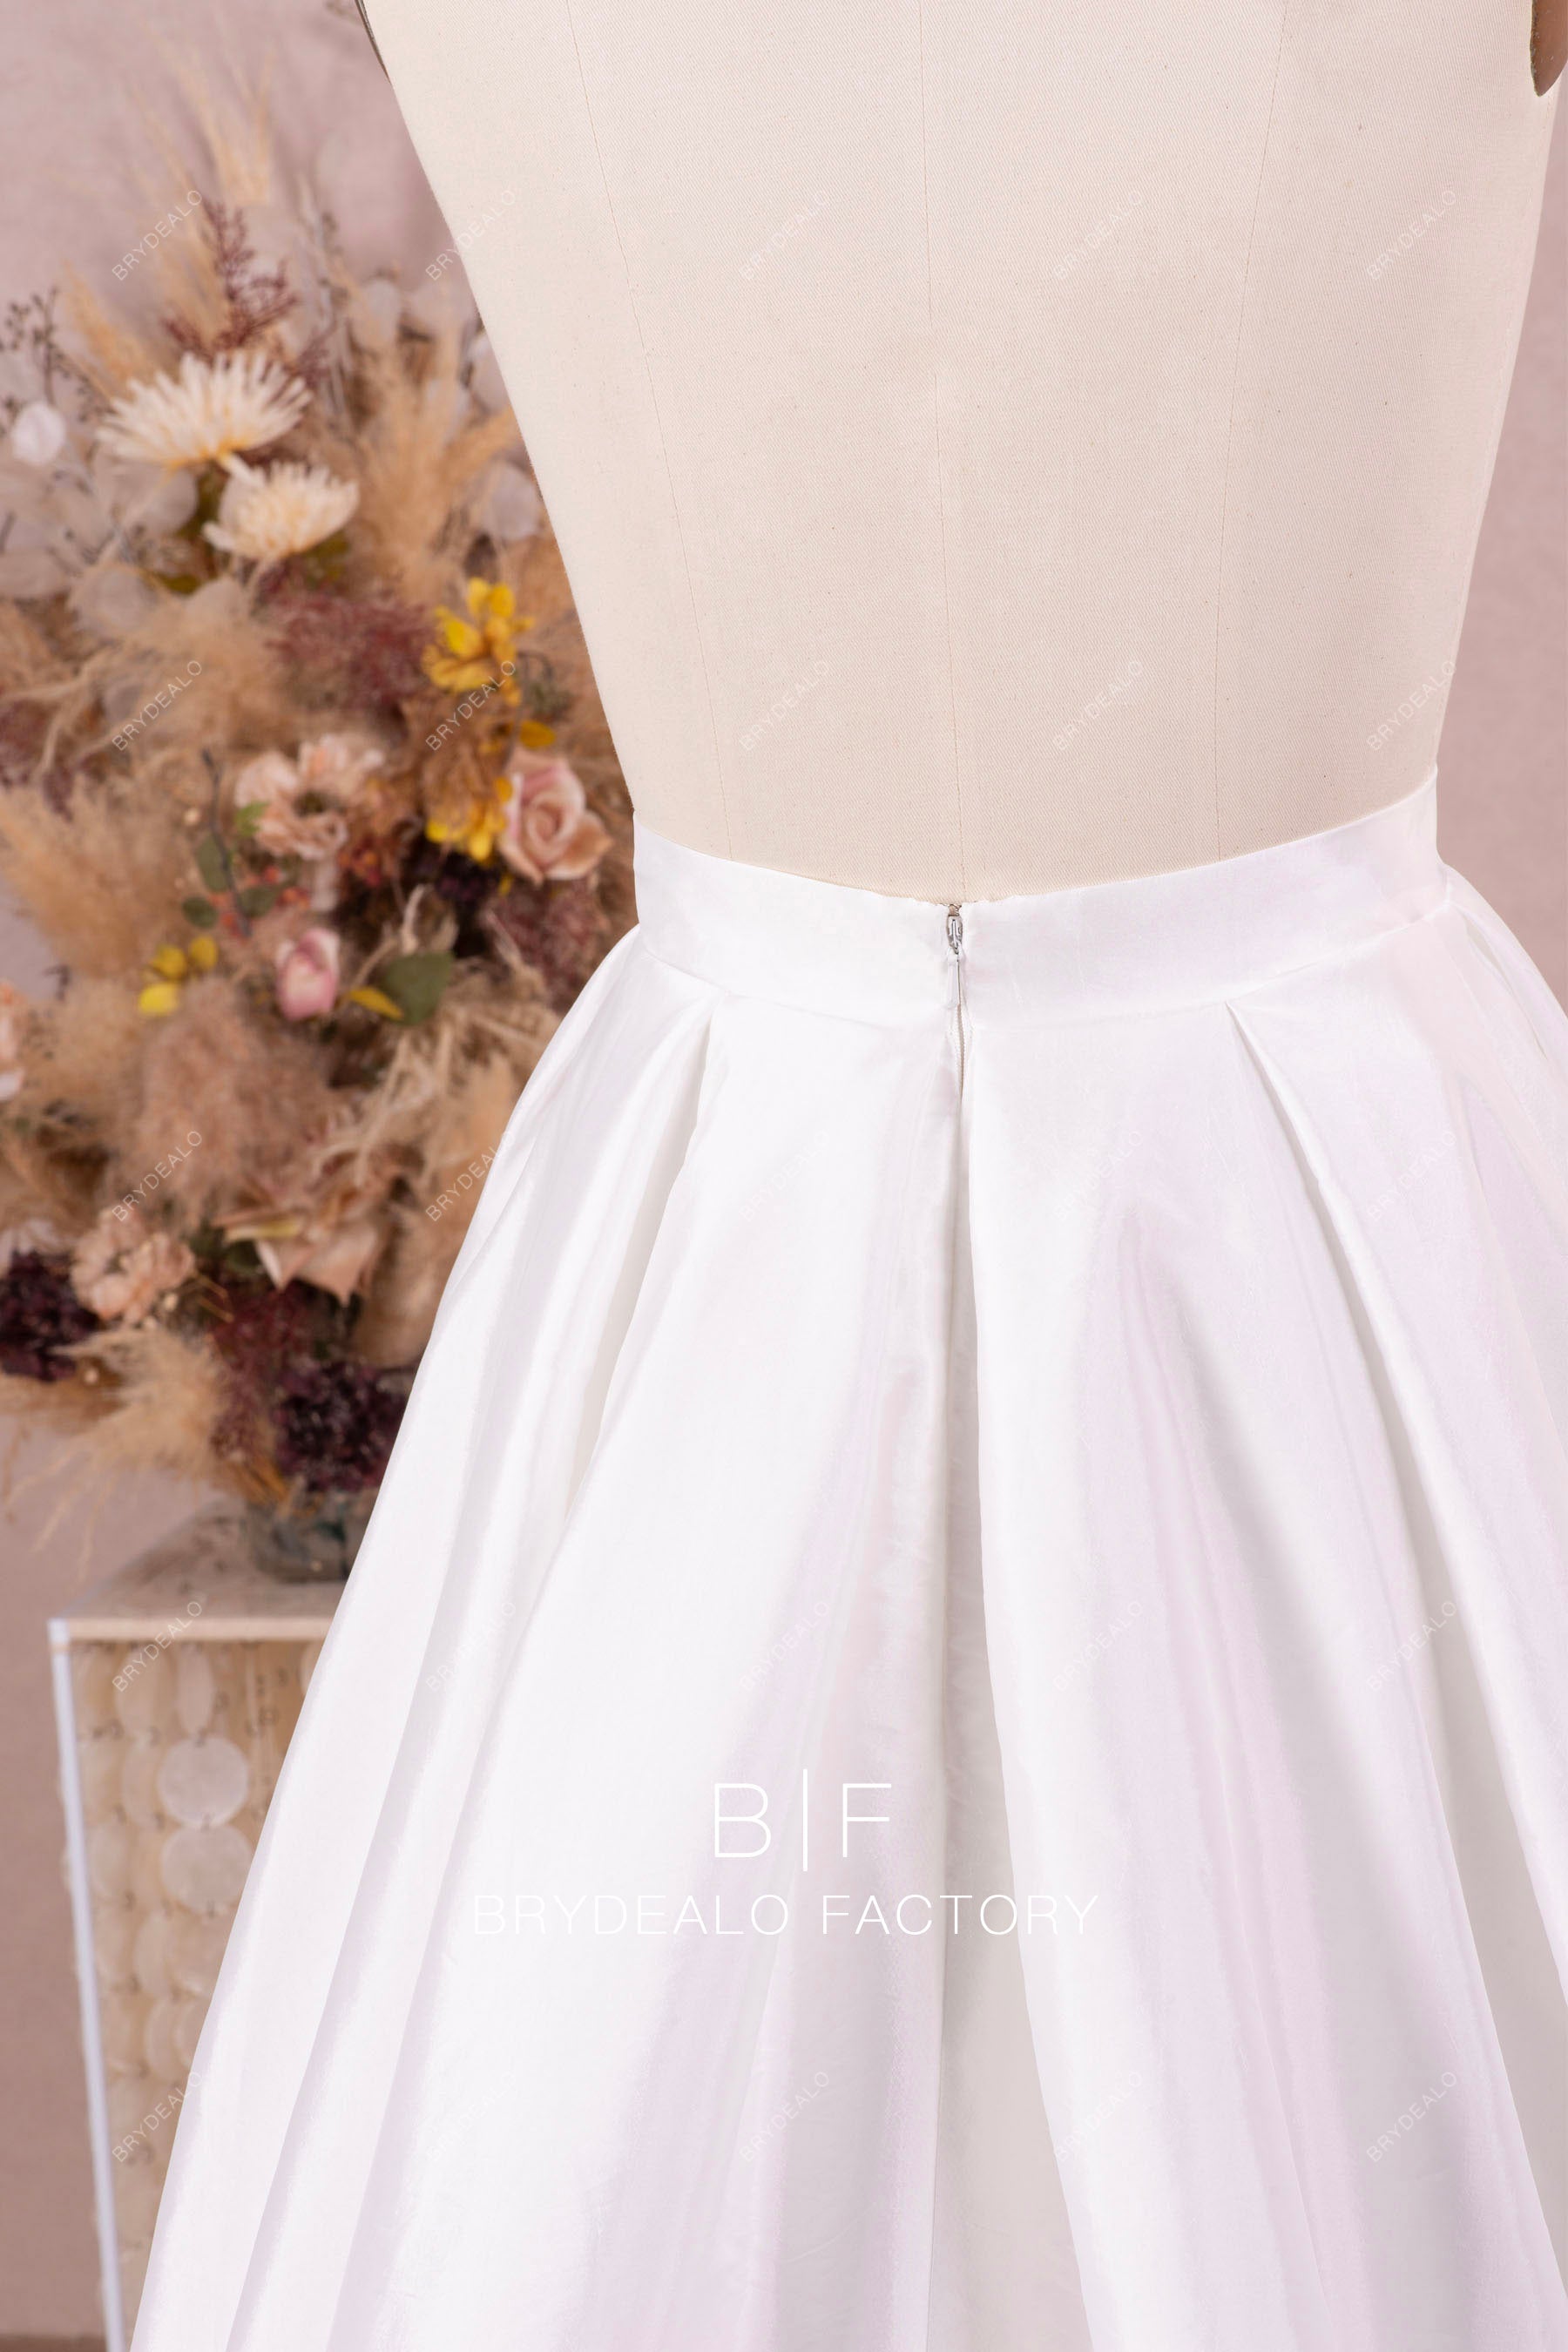 zipper closure taffeta white bridal skirt